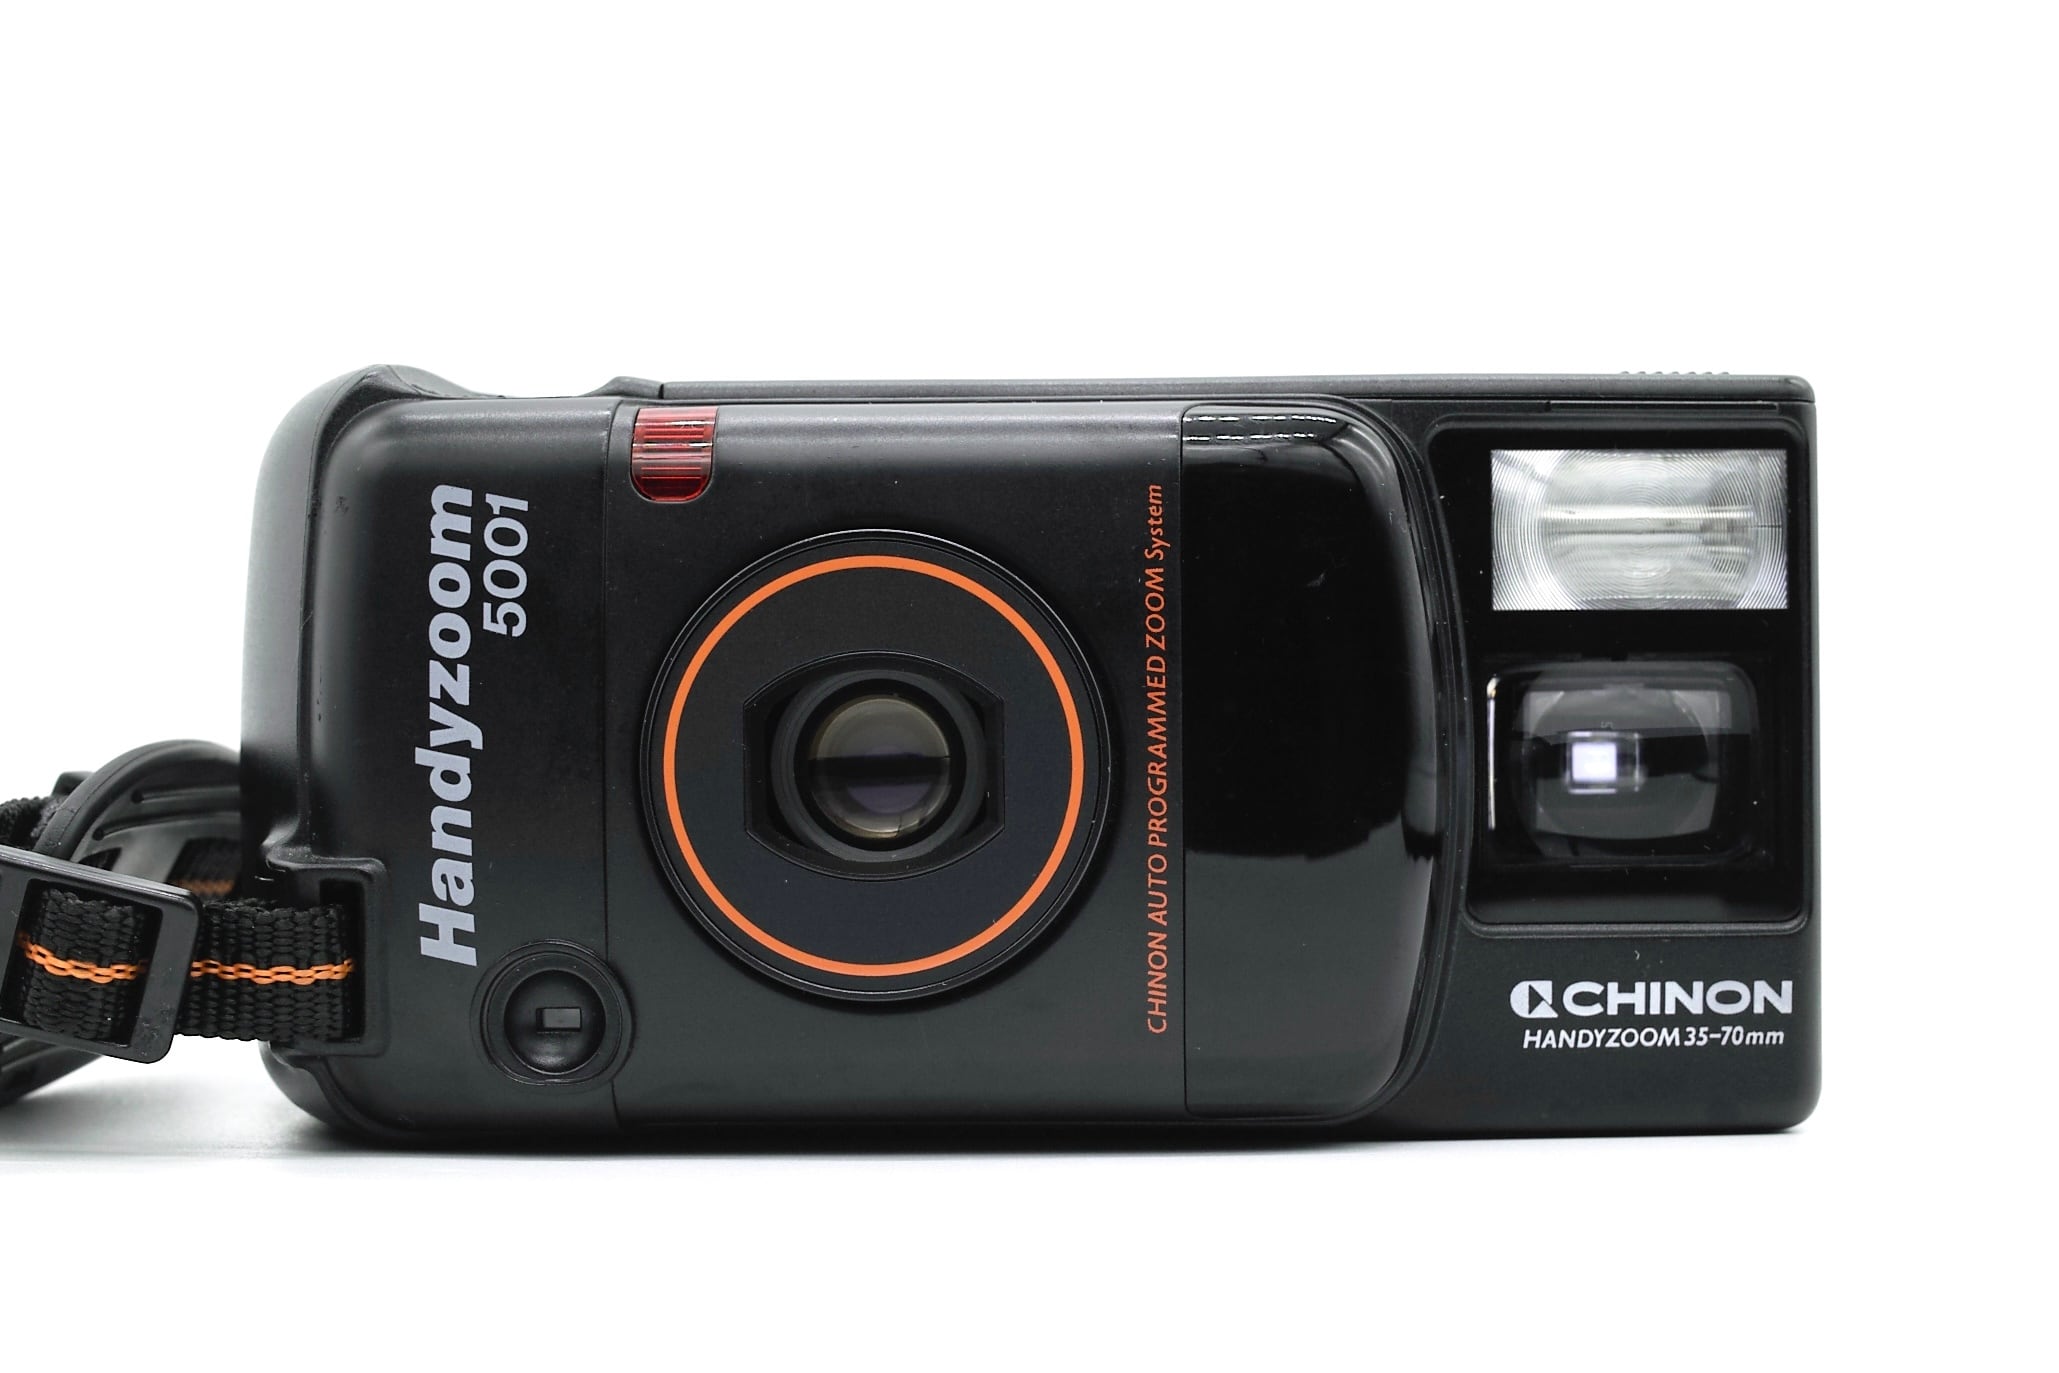 CHINON Handyzoom 5001 | ヨアケマエカメラ